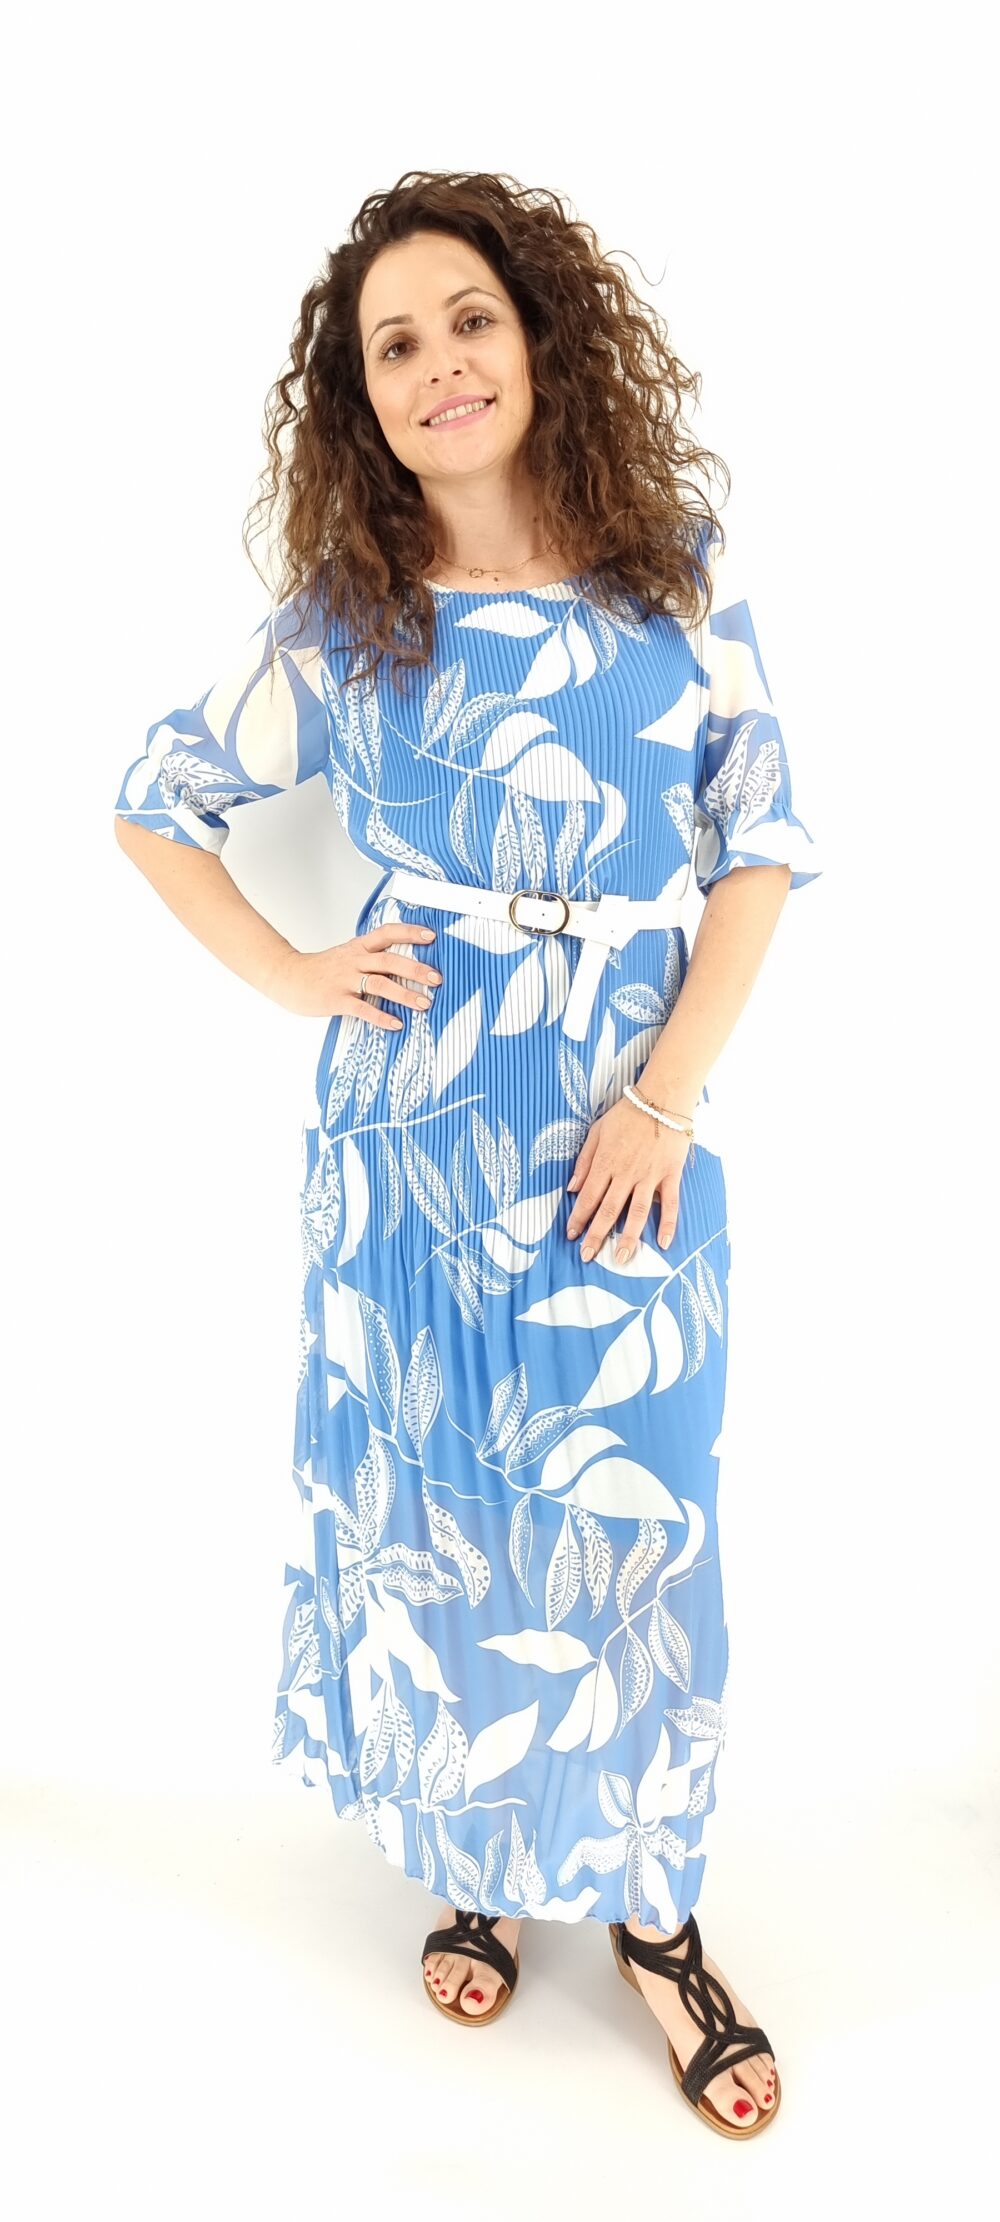 Φόρεμα μακρύ πλισέ με σχέδια φύλλα με κοντό μανίκι και άσπρη ζώνη γαλάζιο